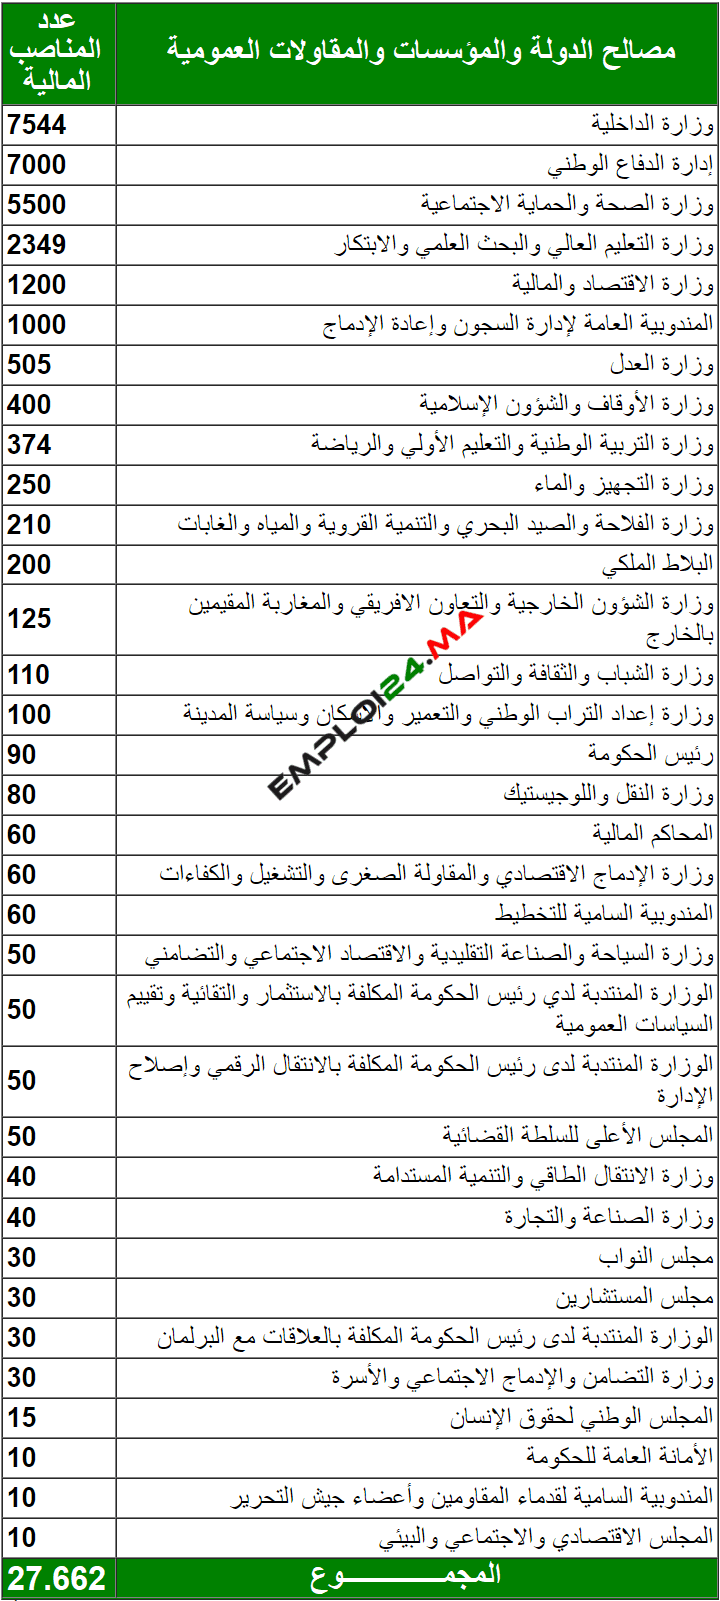 Postes budgétaires 2023 au Maroc